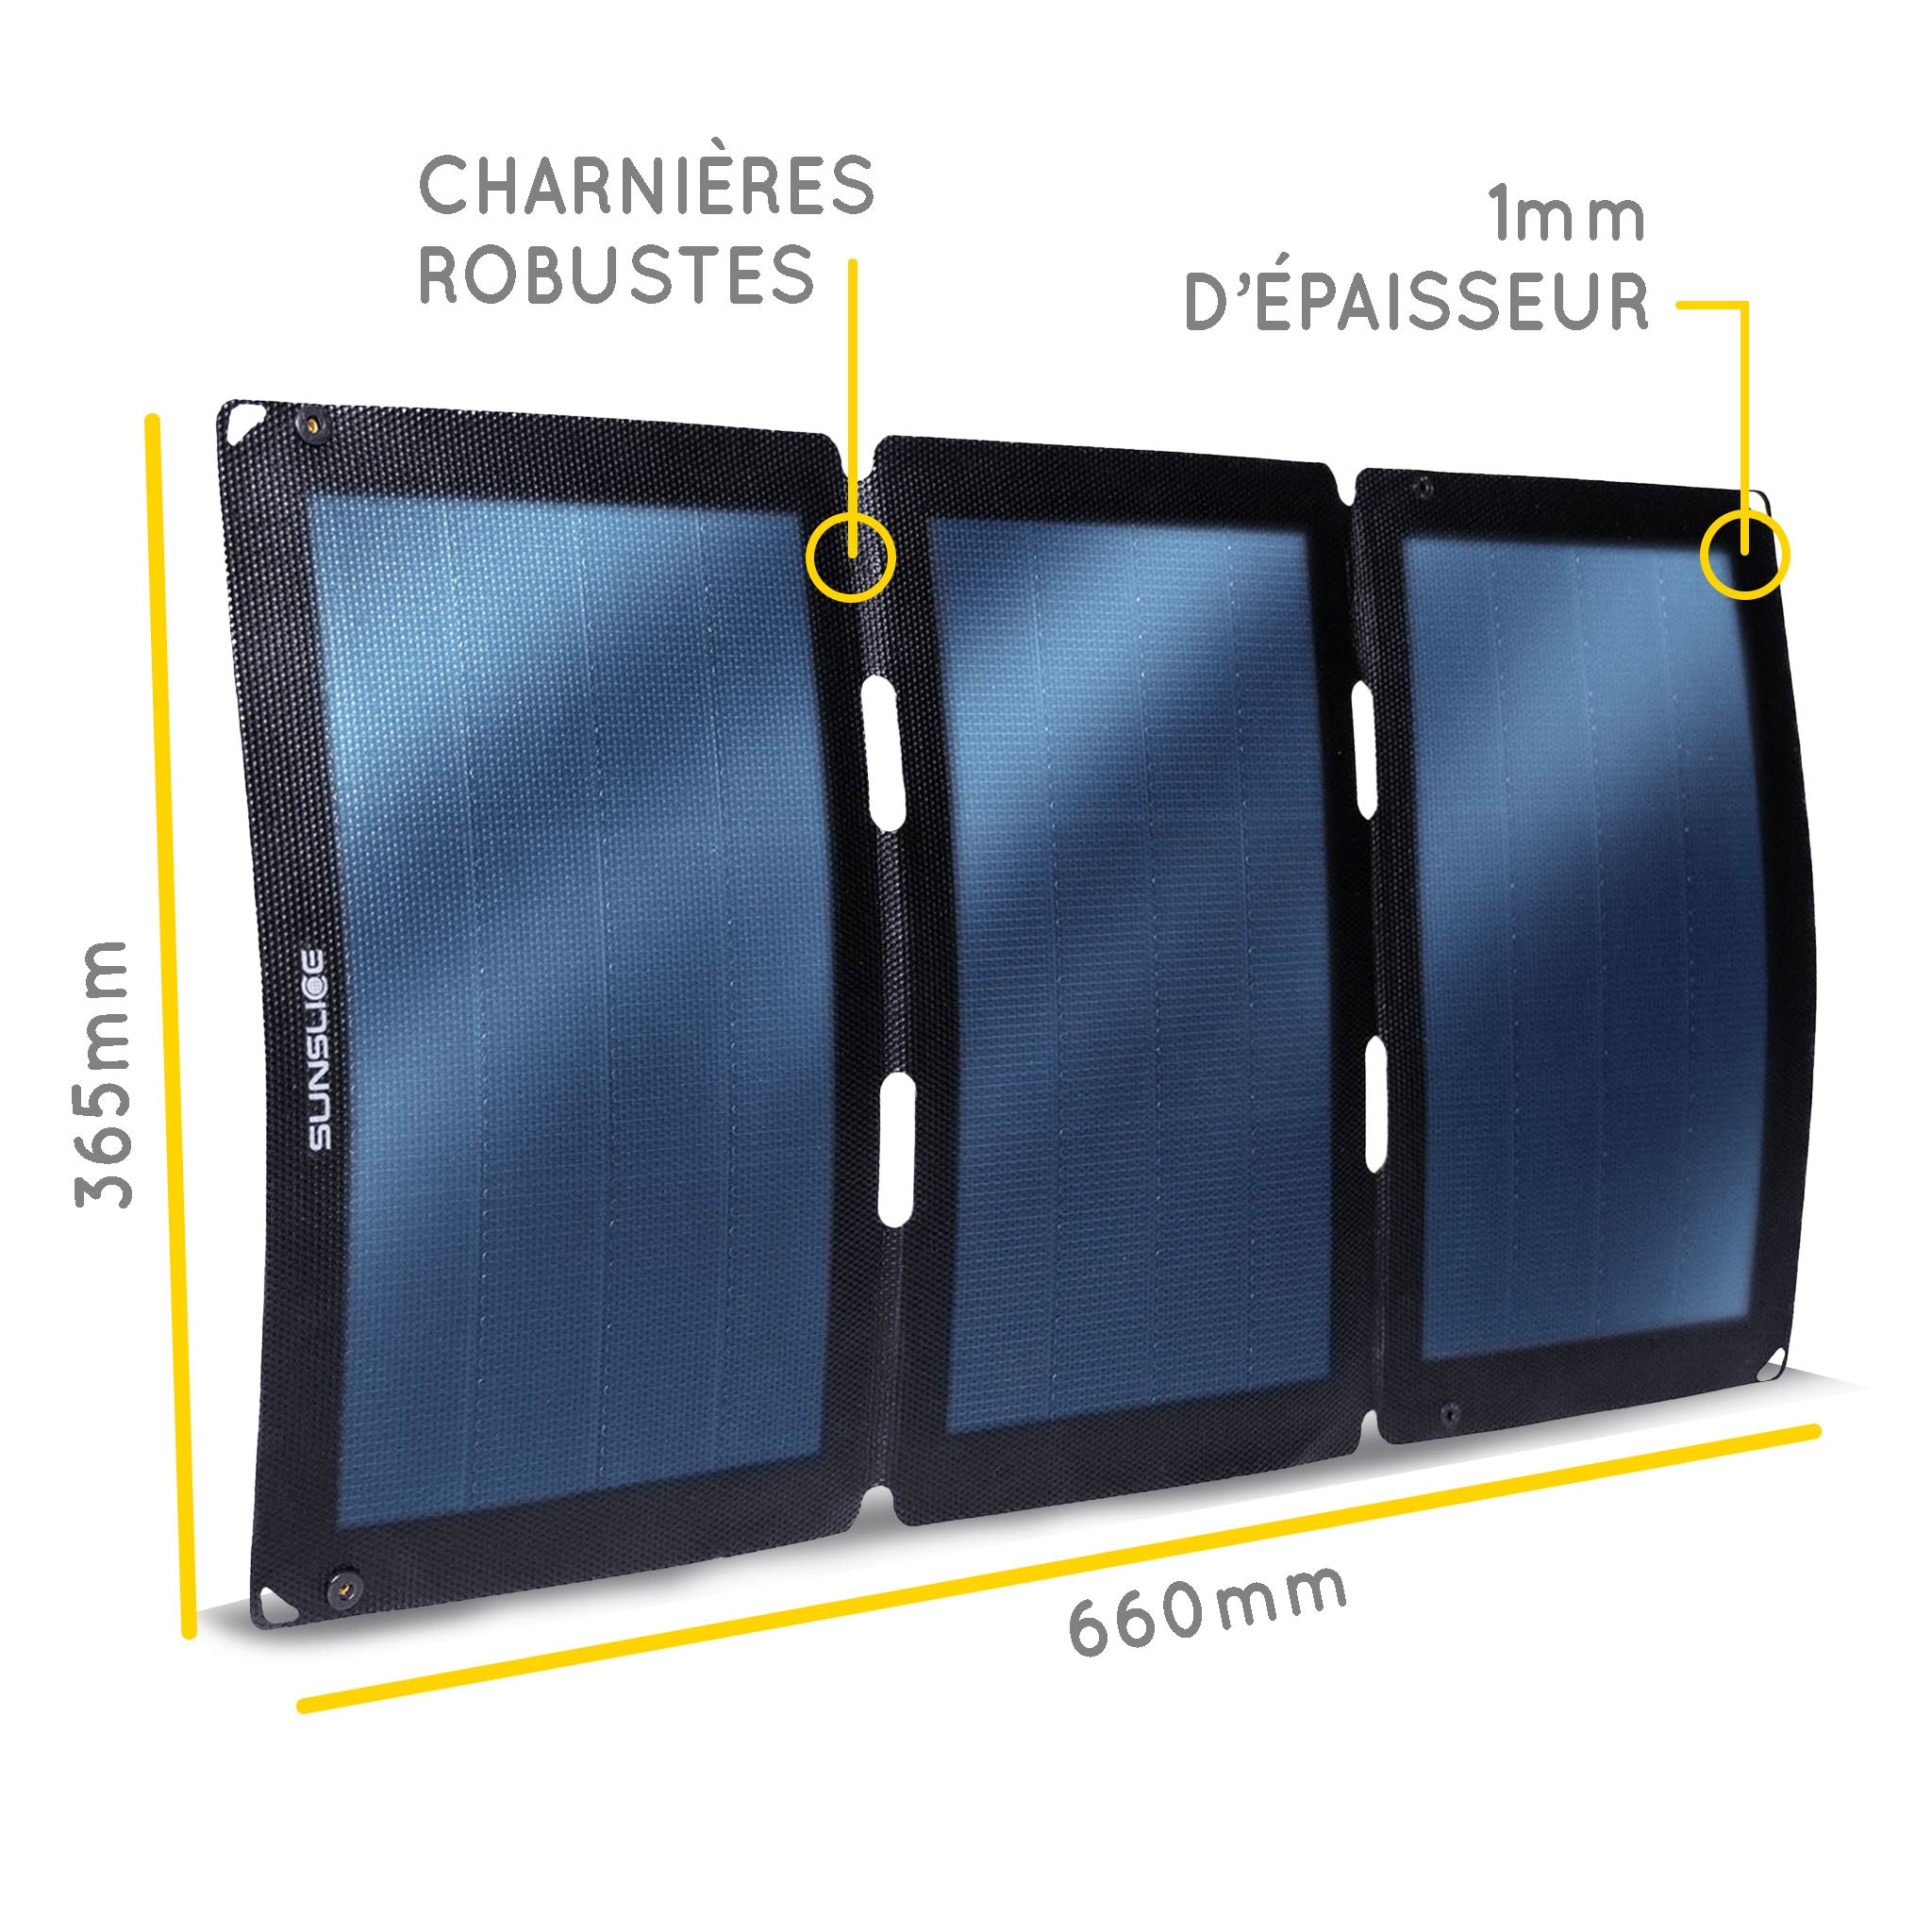 Panneau solaire ouvert ( 3 panneaux) informations . Dimensions : 660 mm, 365 mm, épaisseur 1 mm. Charnières robustes 